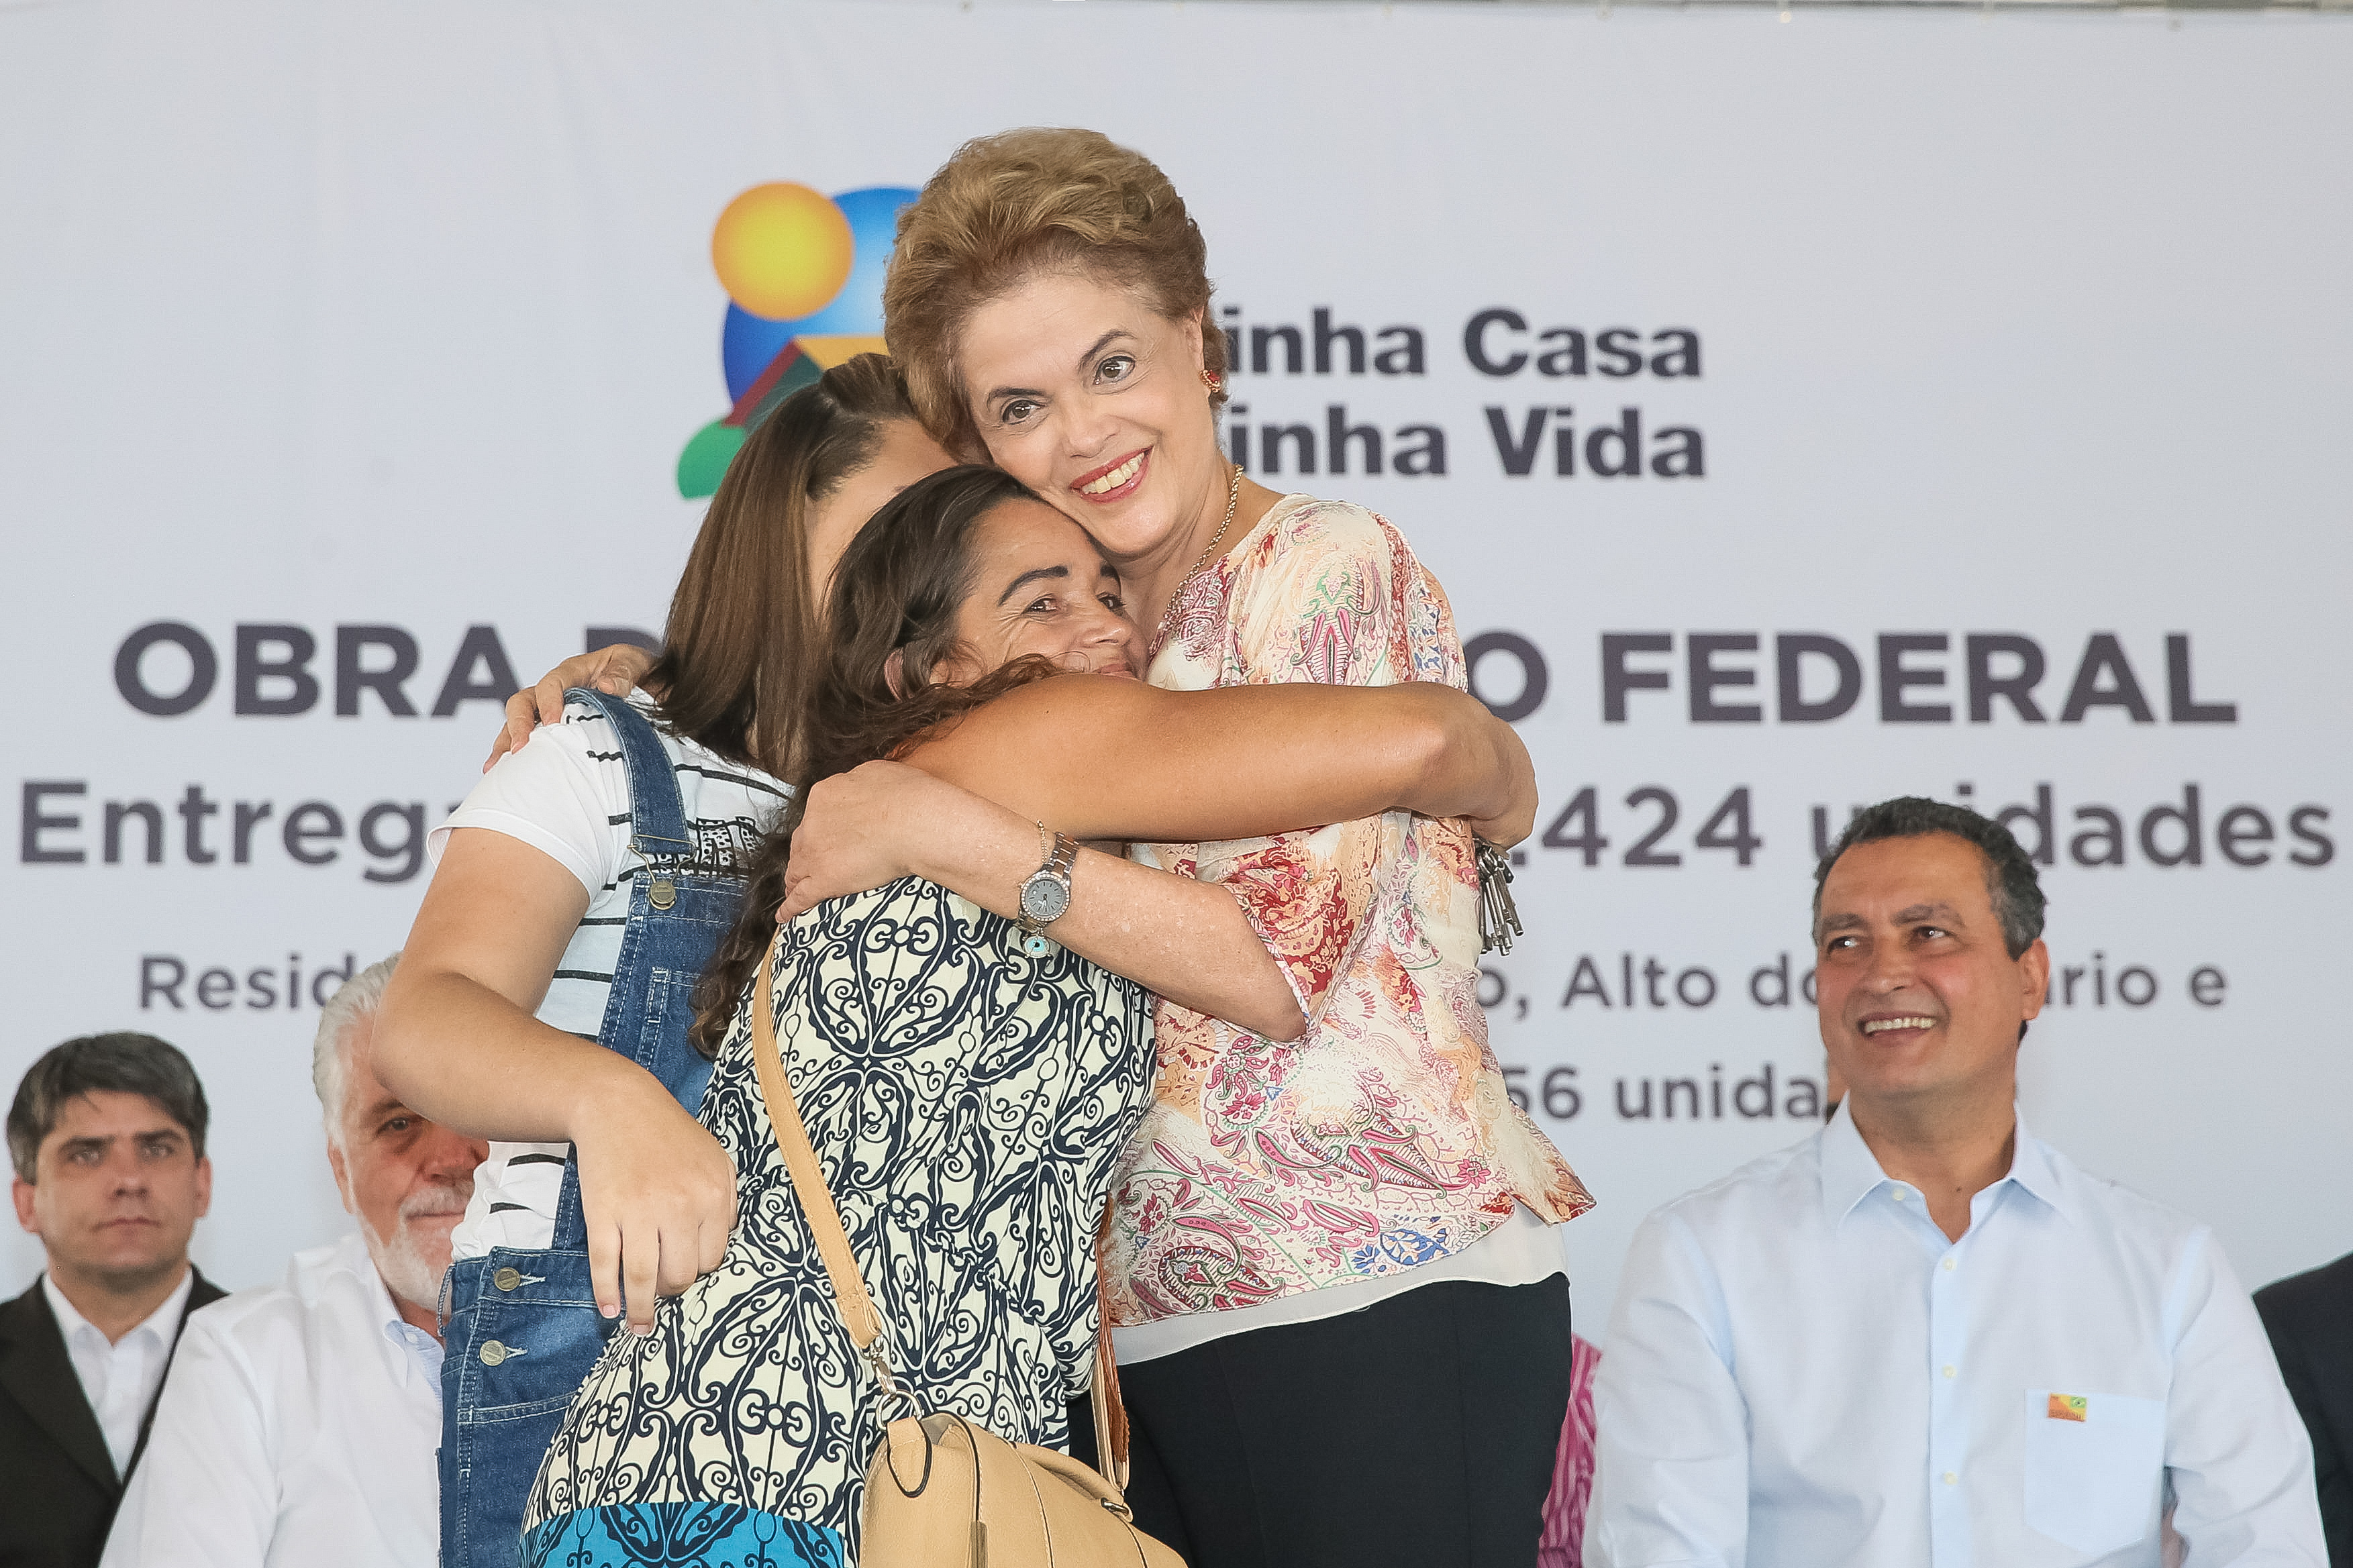 Enquanto oposição tenta golpe, governo Dilma apresenta resultados